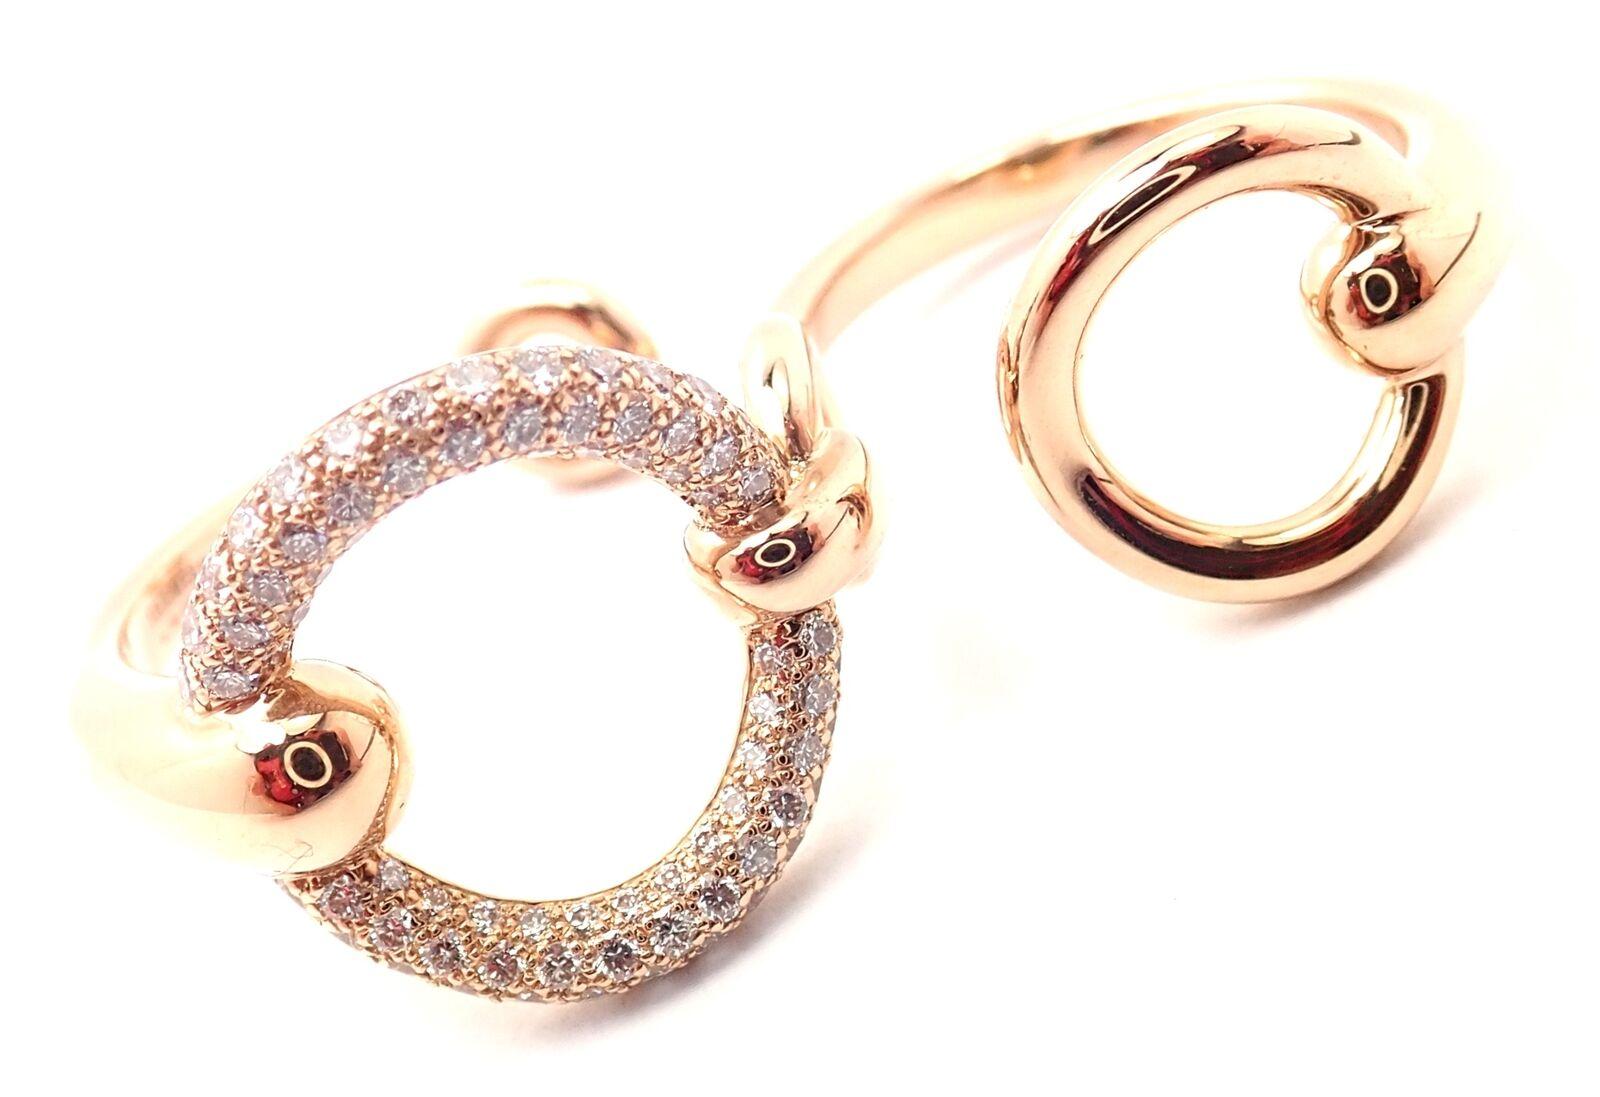 18k Rose Gold Filet d'Or Large Model Diamond Double Band Ring von Hermes.
Mit 78 Diamanten im Brillantschliff VS1 Reinheit, G Farbe Gesamtgewicht ca. .43ct
Einzelheiten: 
Ring Größe: Europäisch 49 US 4 3/4
Gewicht: 8.8 Gramm
Breite: 15